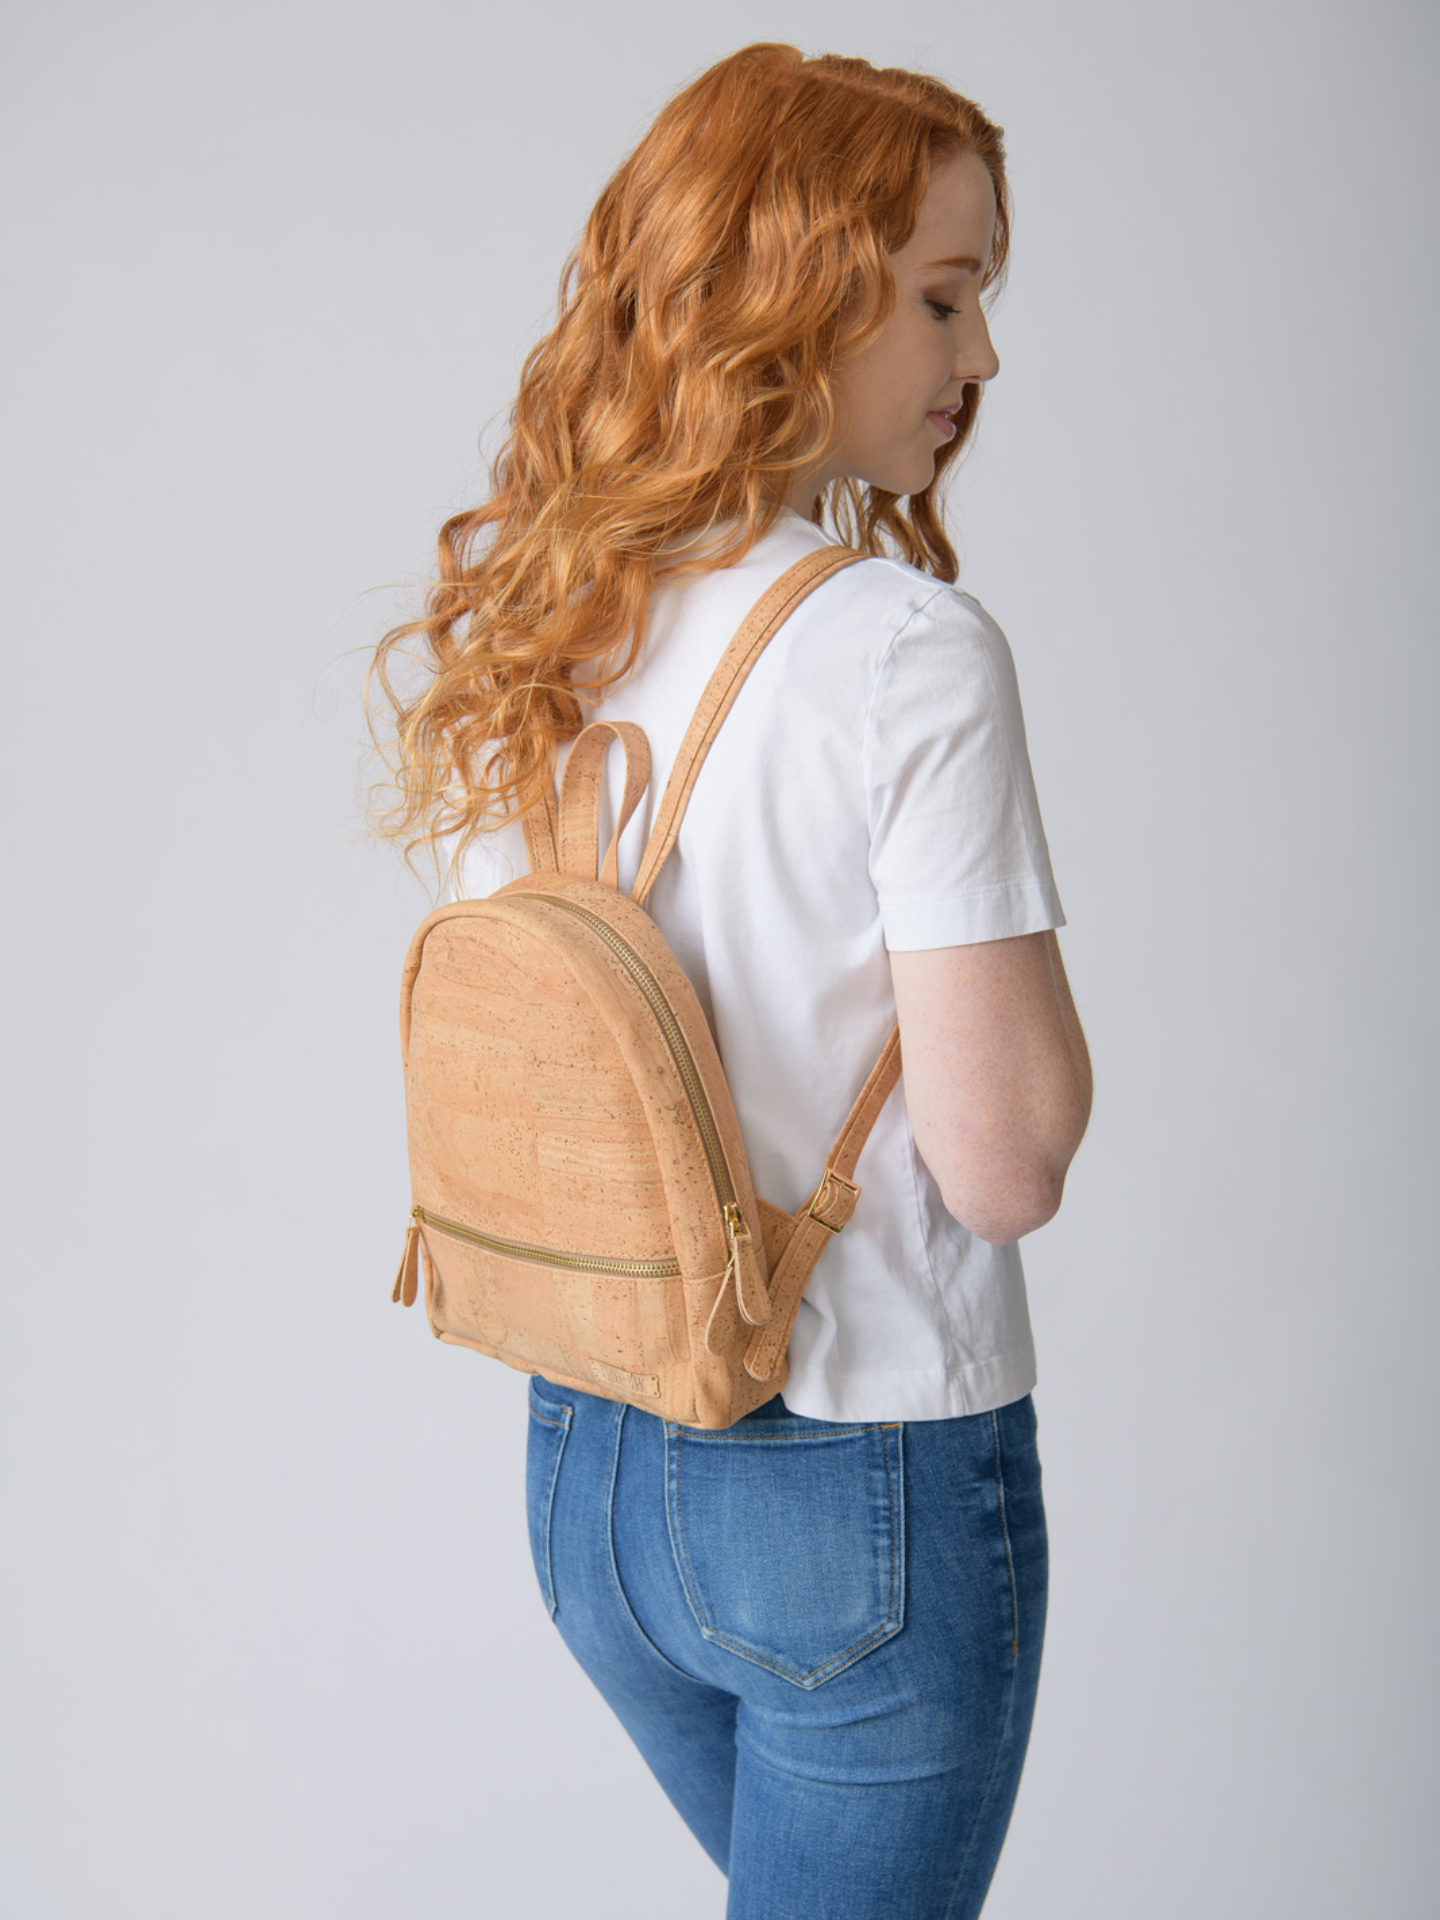 Vegan Cork Bags | Natural Cork Handbags, Purses, and Backpacks – HowCork